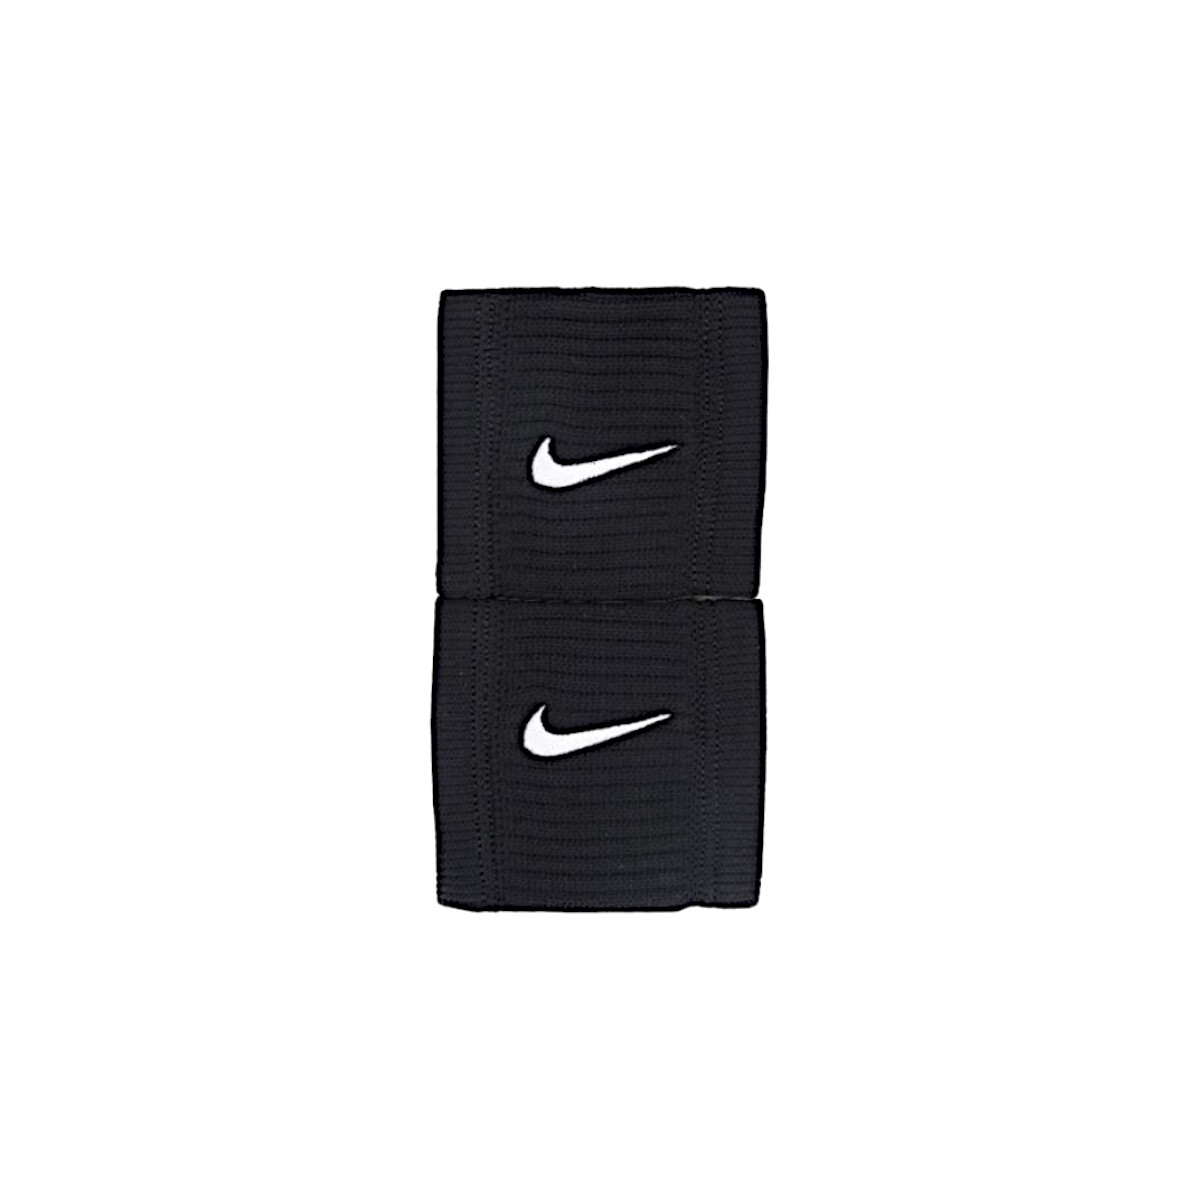 Acessórios Acessórios de desporto Nike Dri-Fit Reveal Wristbands Preto